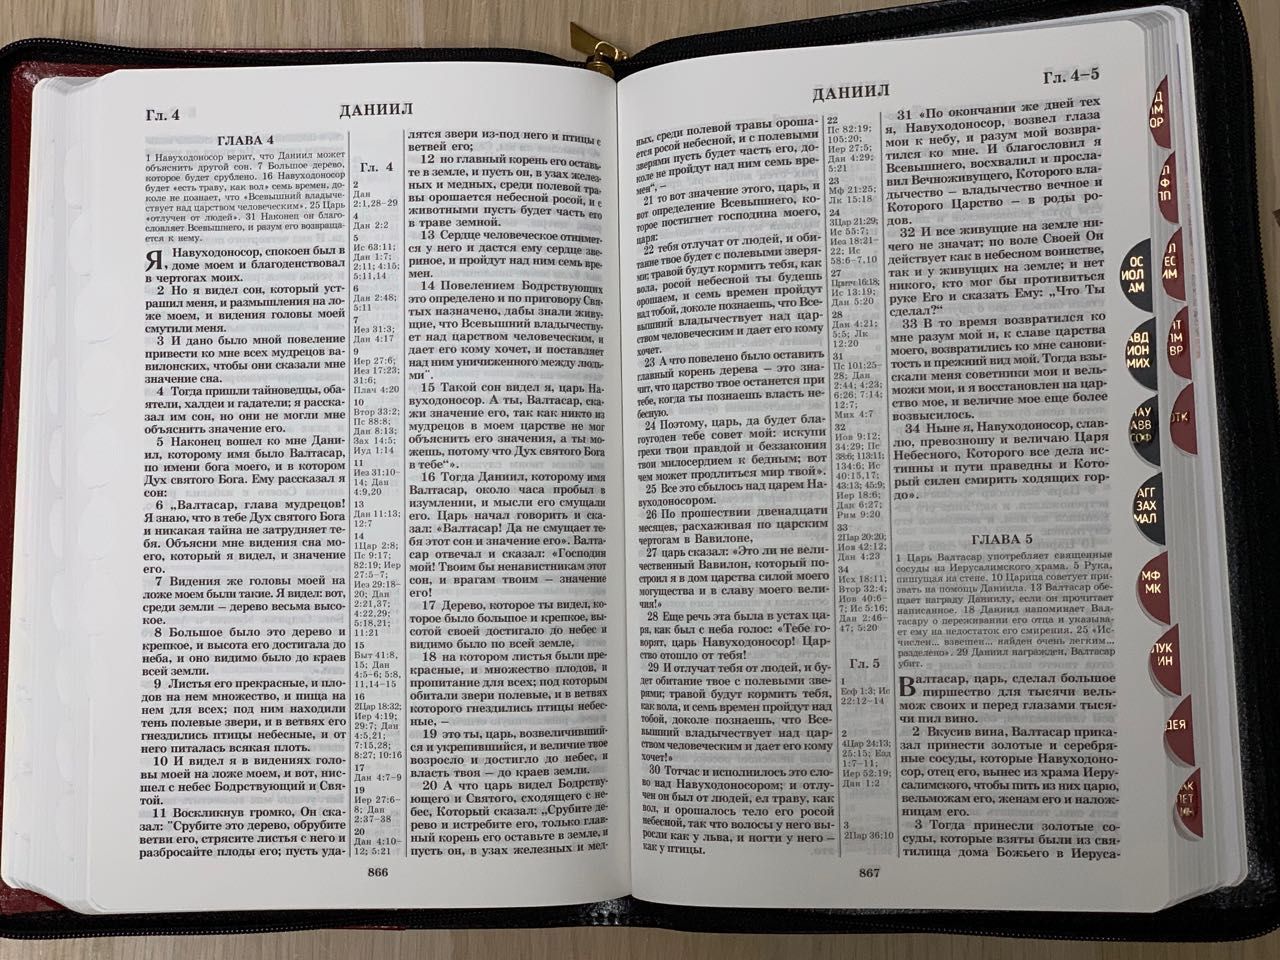 БИБЛИЯ 077zti формат, переплет из натуральной кожи на молнии с индексами, цвет черный металлик, большой формат, 180*260 мм, цветные карты, крупный шрифт